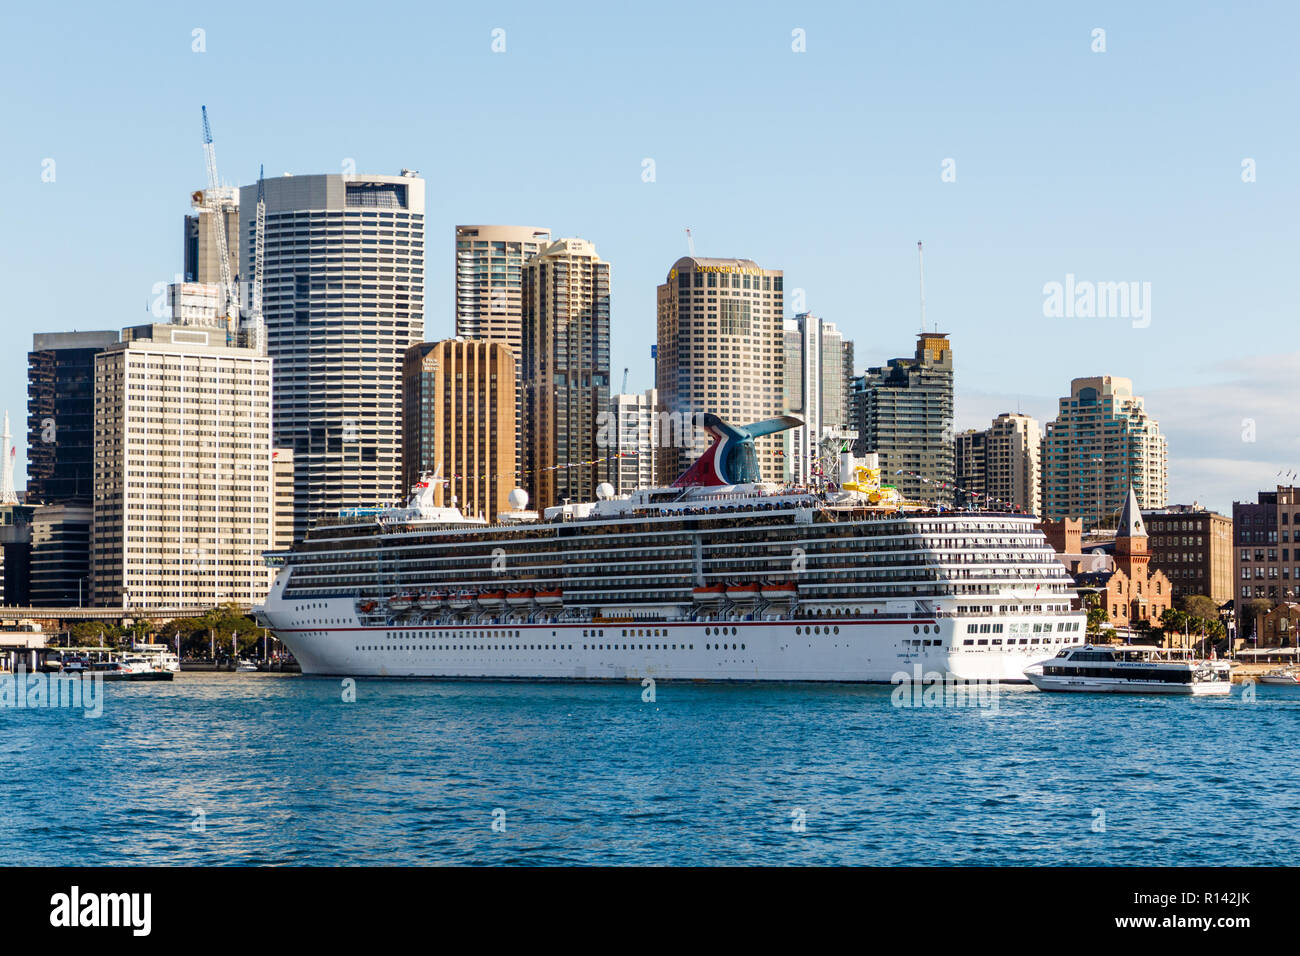 Sydney, Australien - 5. Juni 2015: Das kreuzfahrtschiff Carnival Spirit günstig am Circular Quay. Sydney ist eine beliebte Kreuzfahrt Ziel. Stockfoto